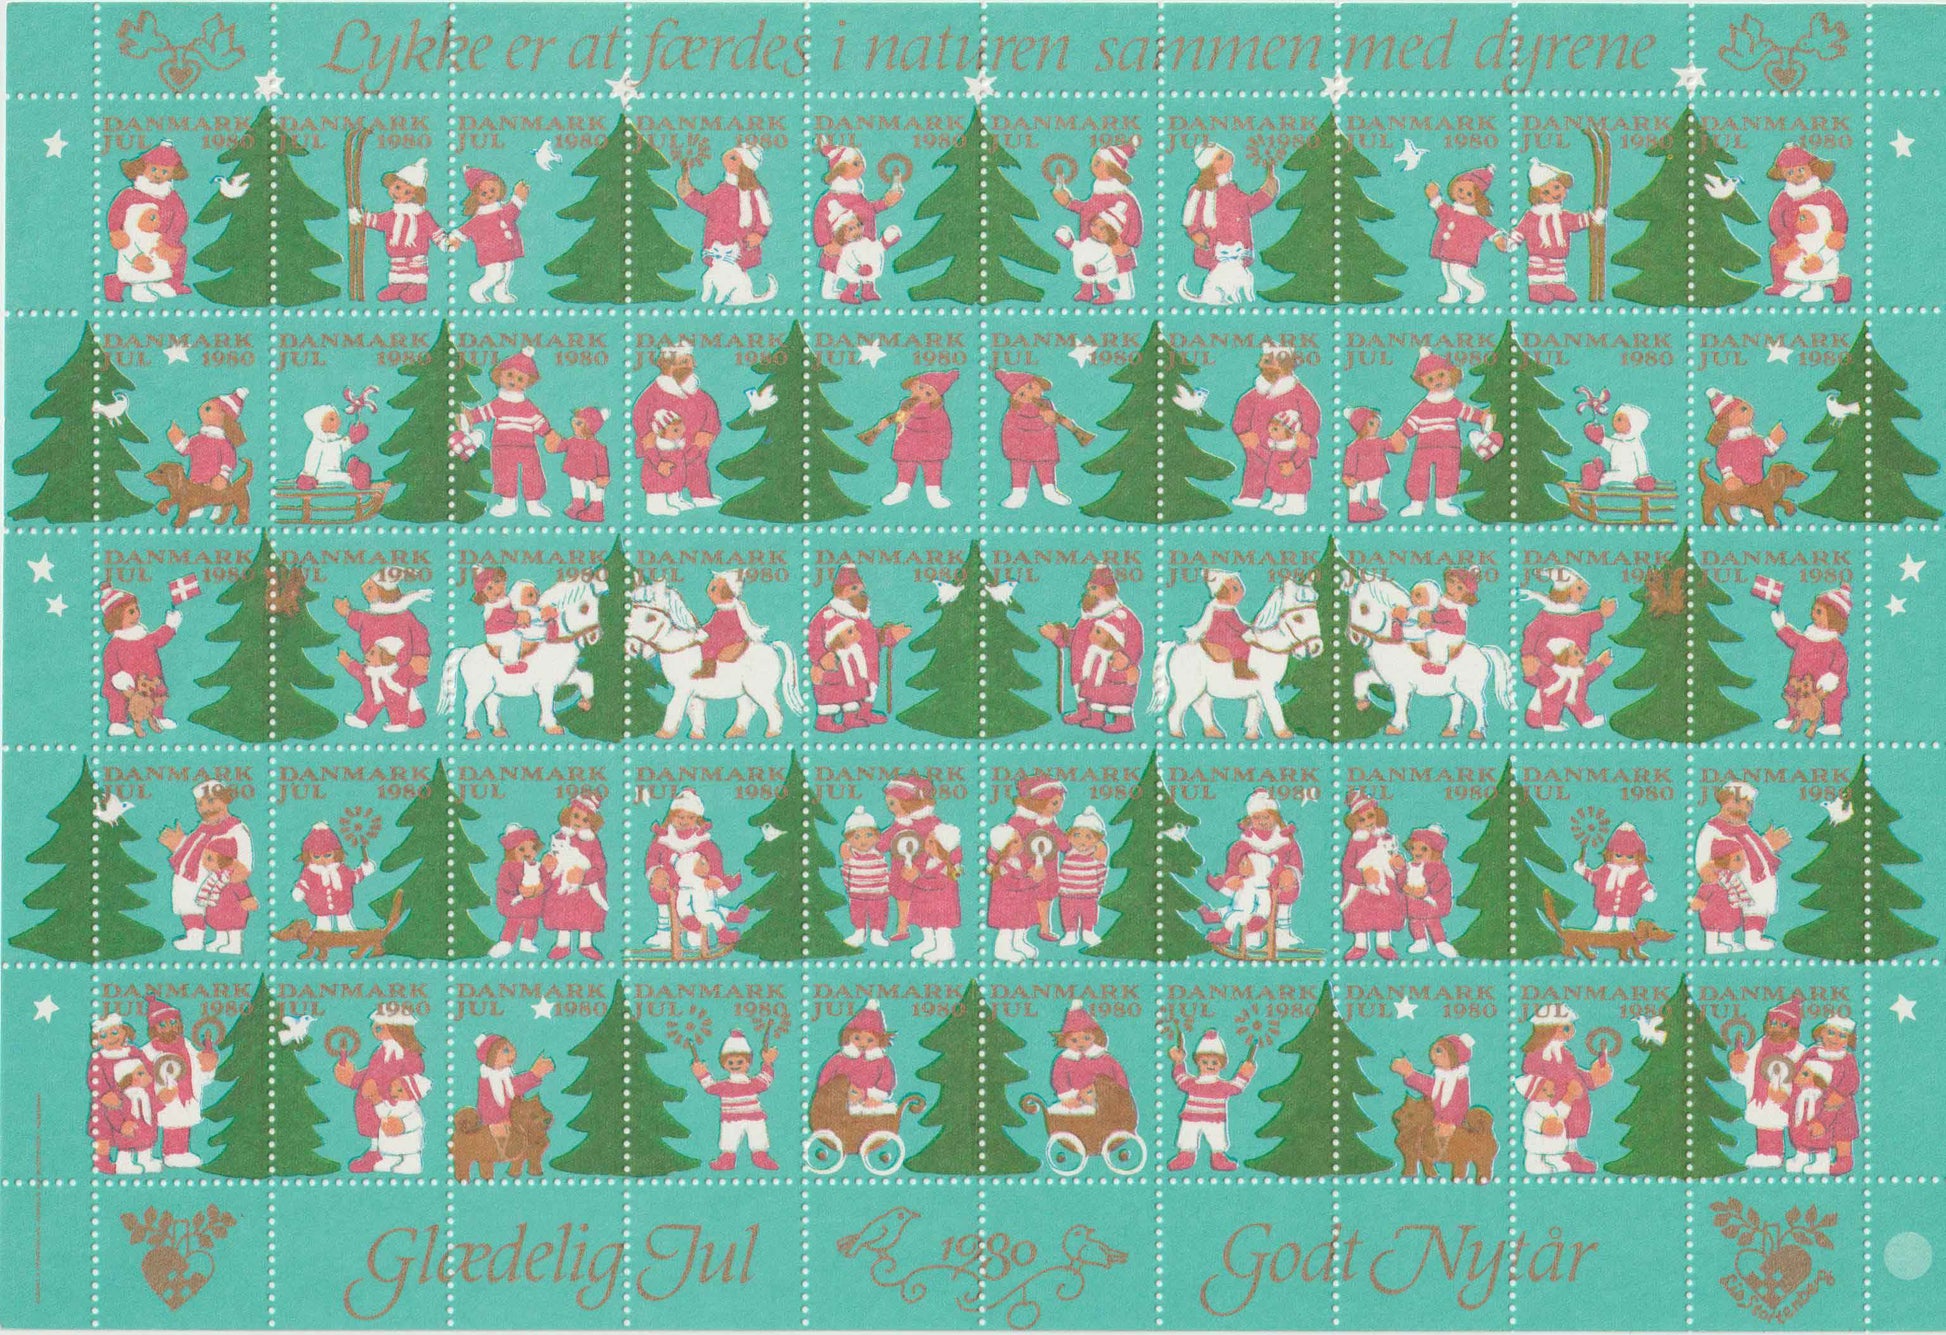 Julemærkeark 1980, Glædelig jul, godt nytår